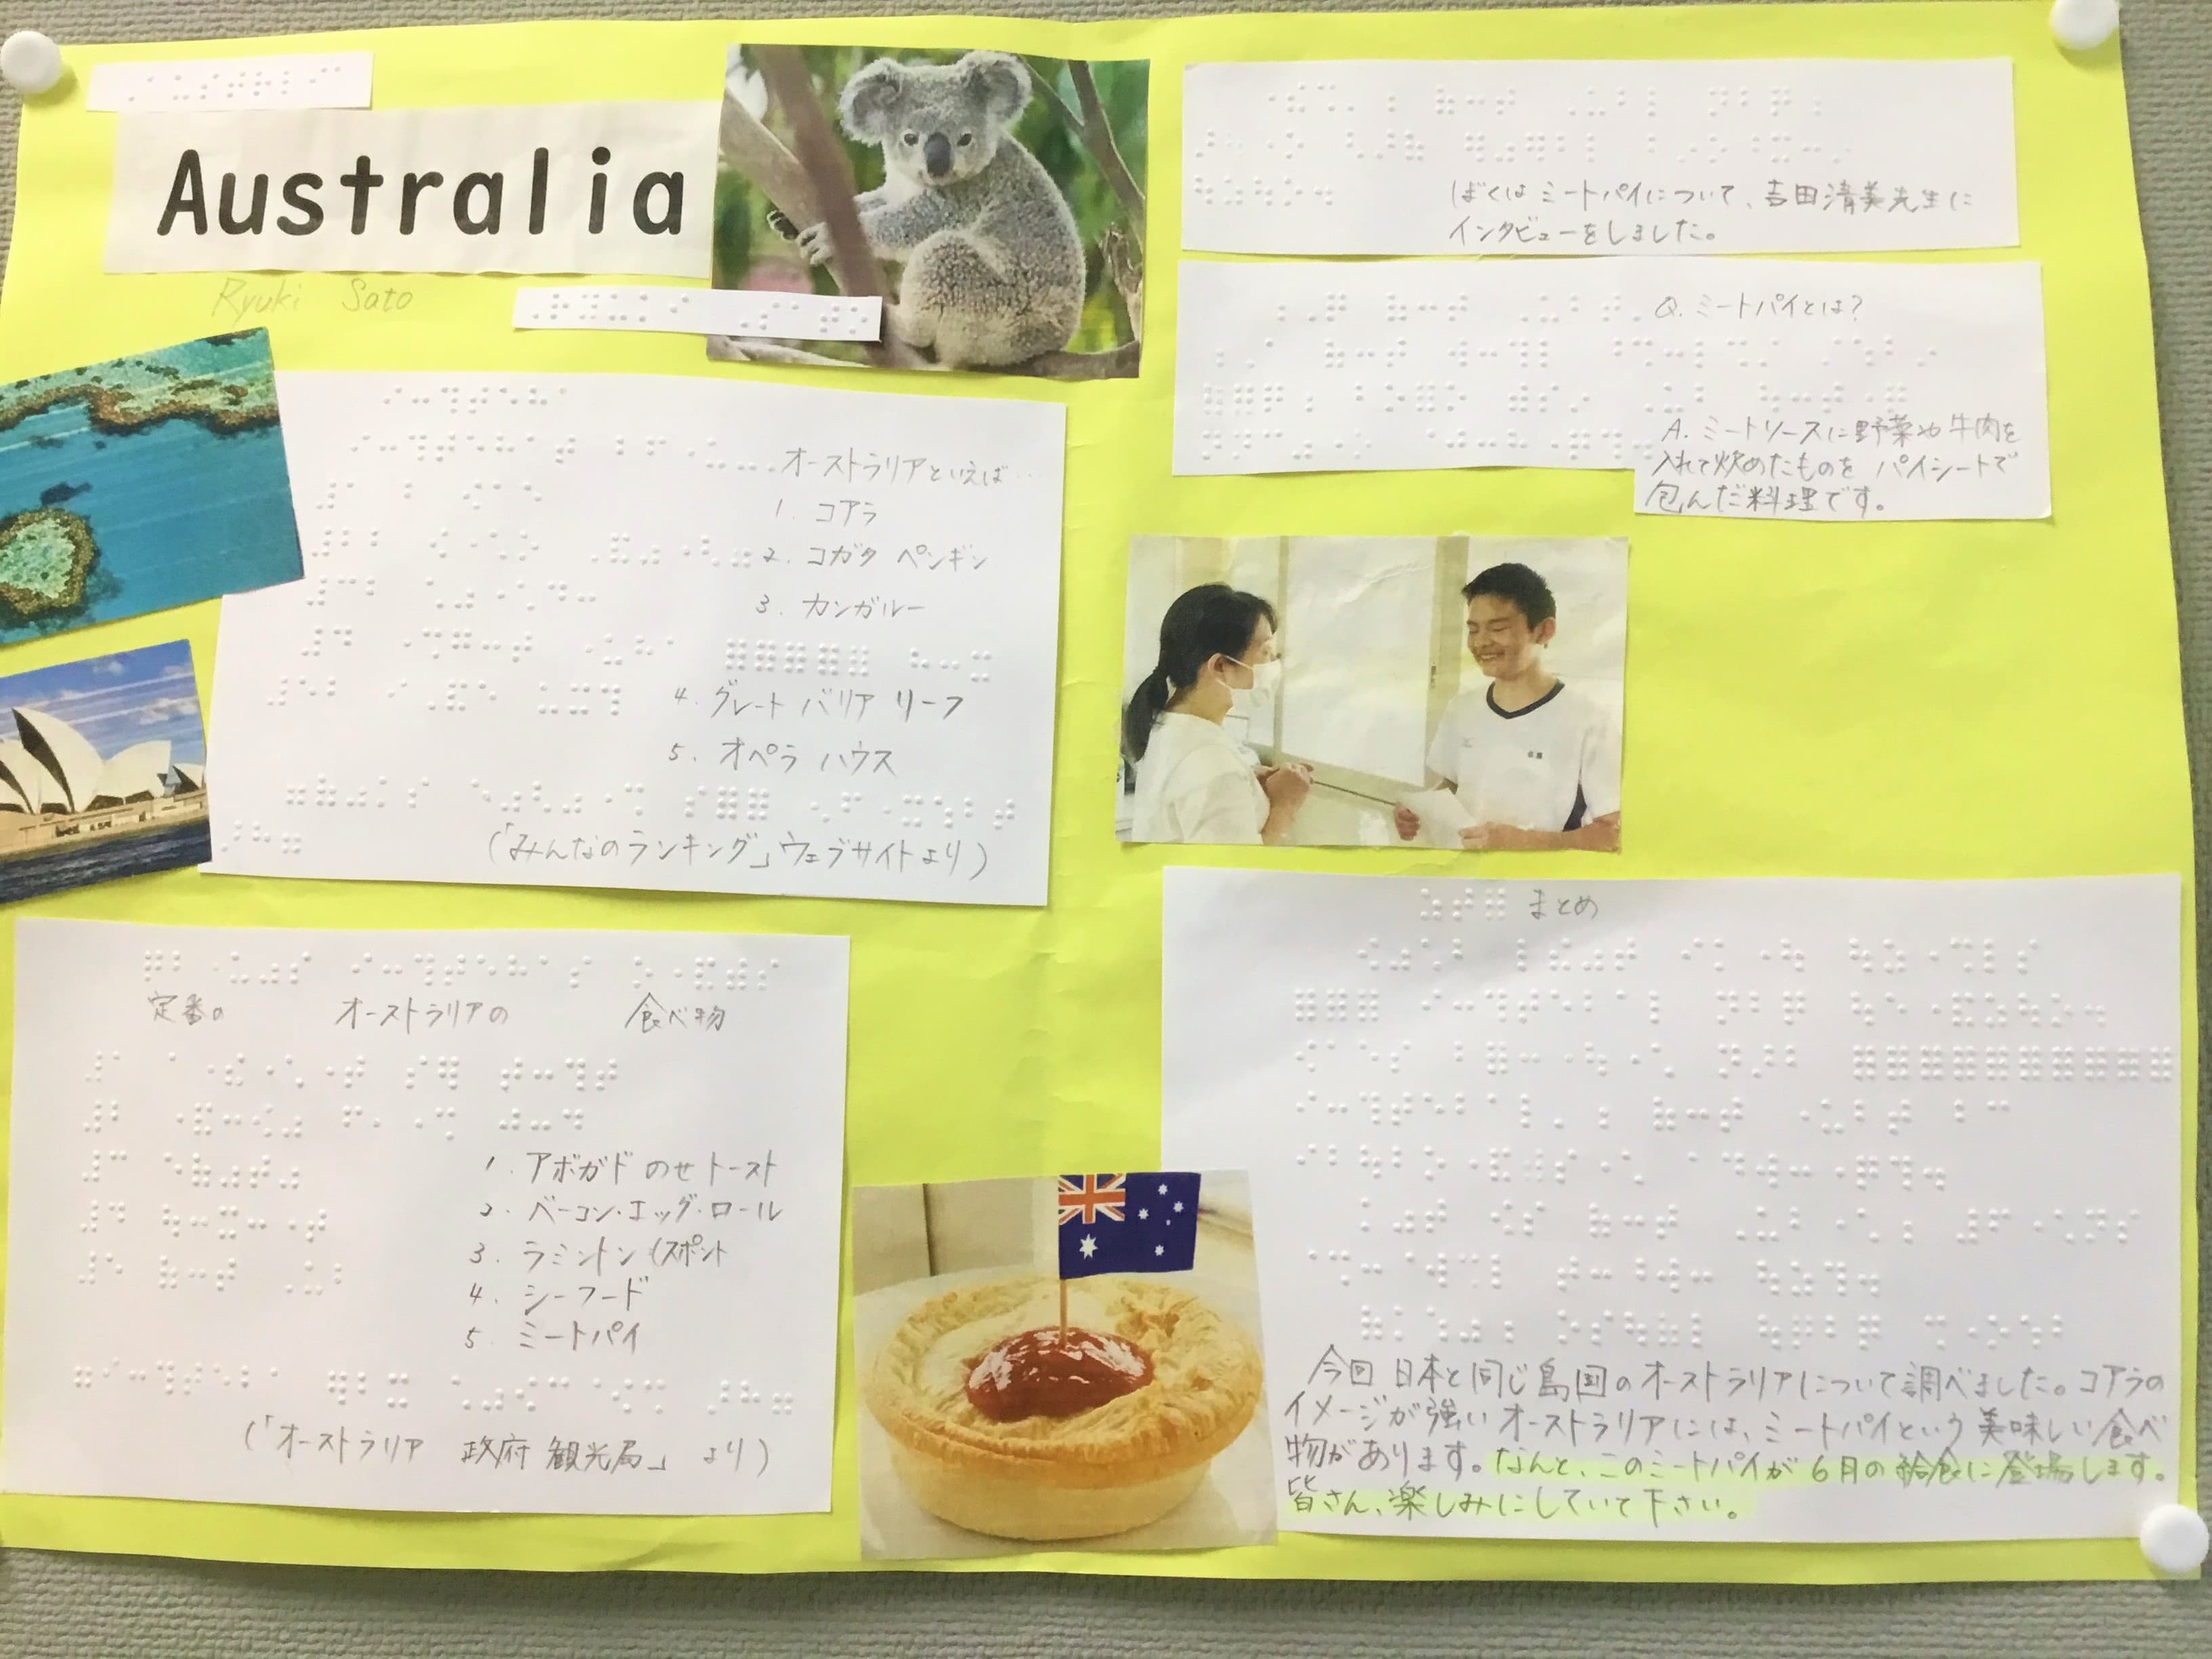 中学部１年生の生徒が、英語の授業でオーストラリアについて調べ、点字で作った掲示物